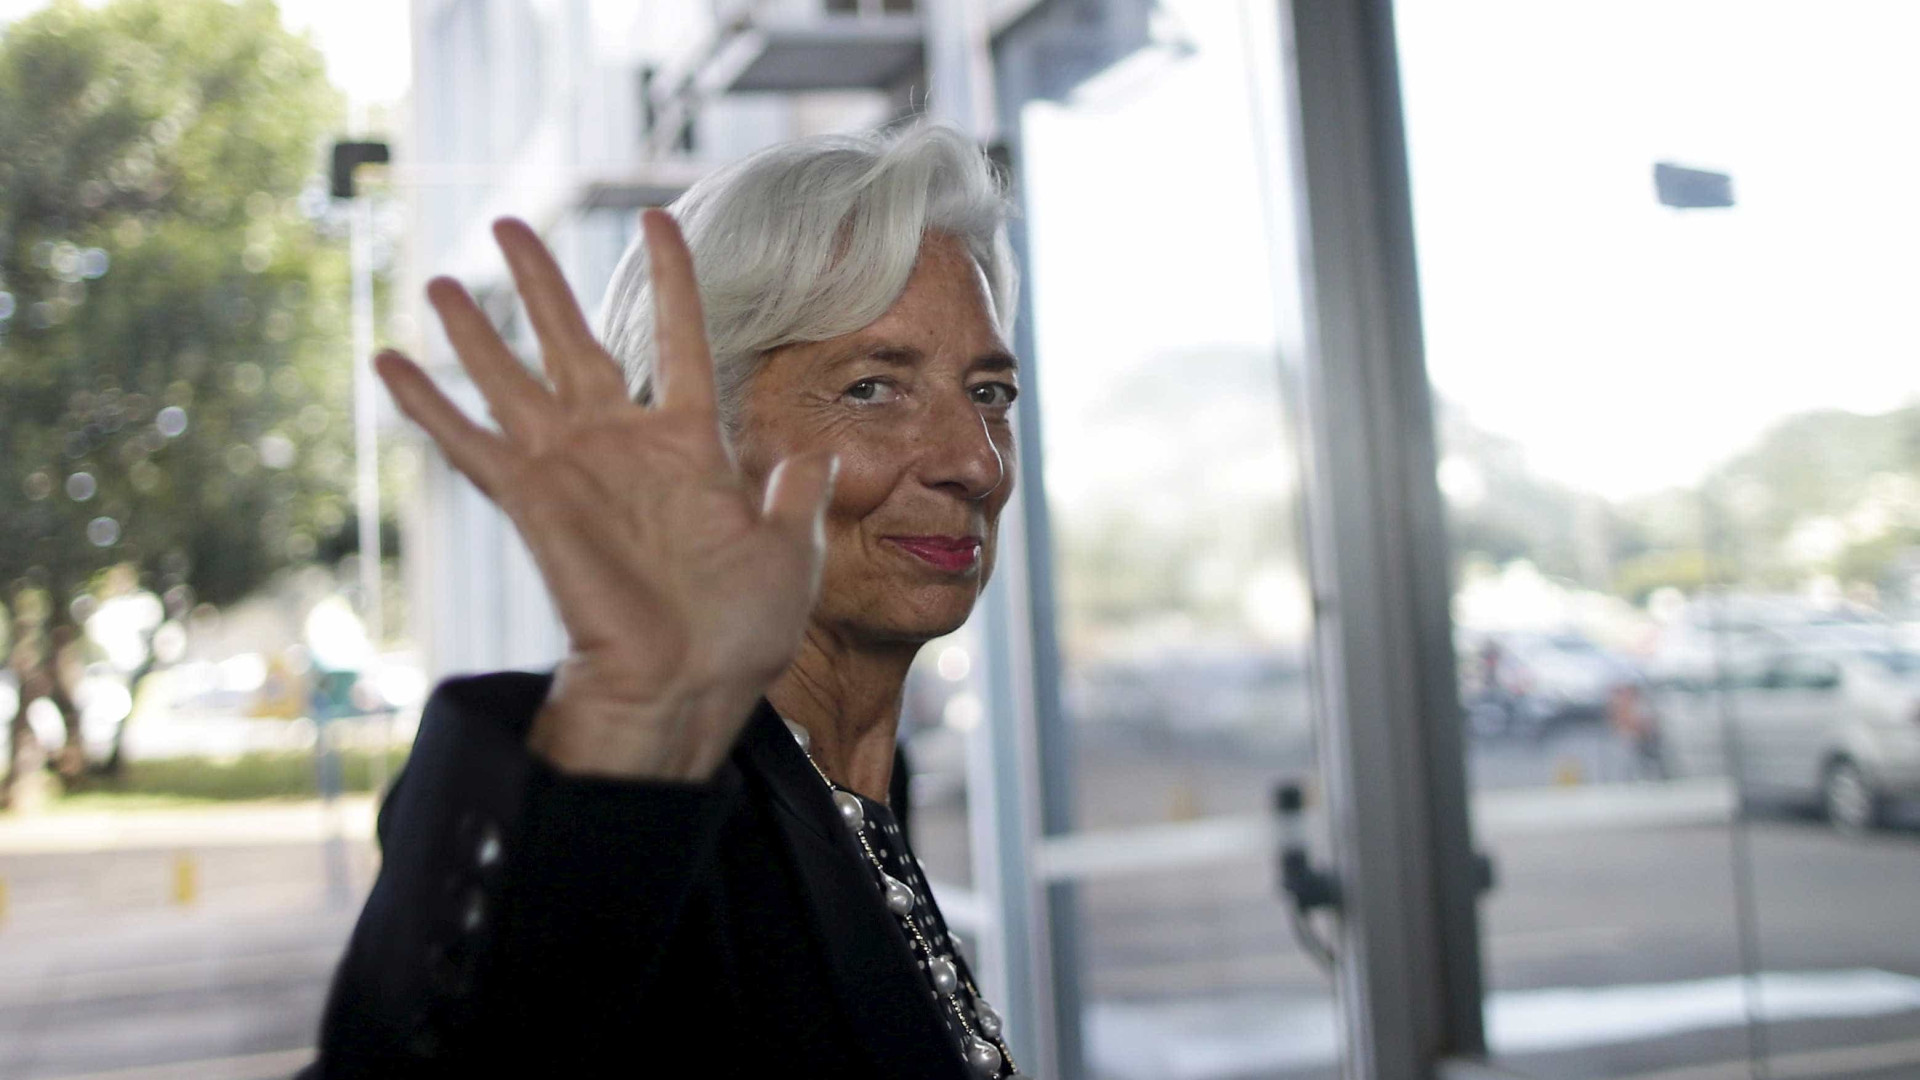 Lagarde questiona se Trump tem
plano econômico para os USA